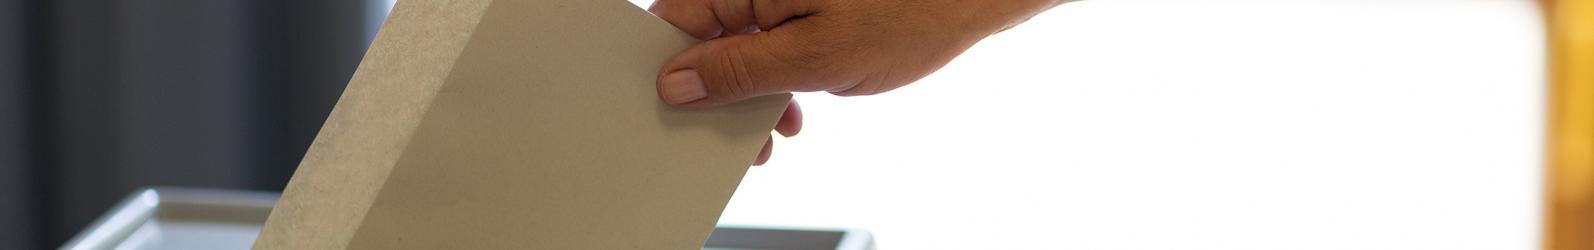 Stimmzettel wird in eine Wahlurne geworfen